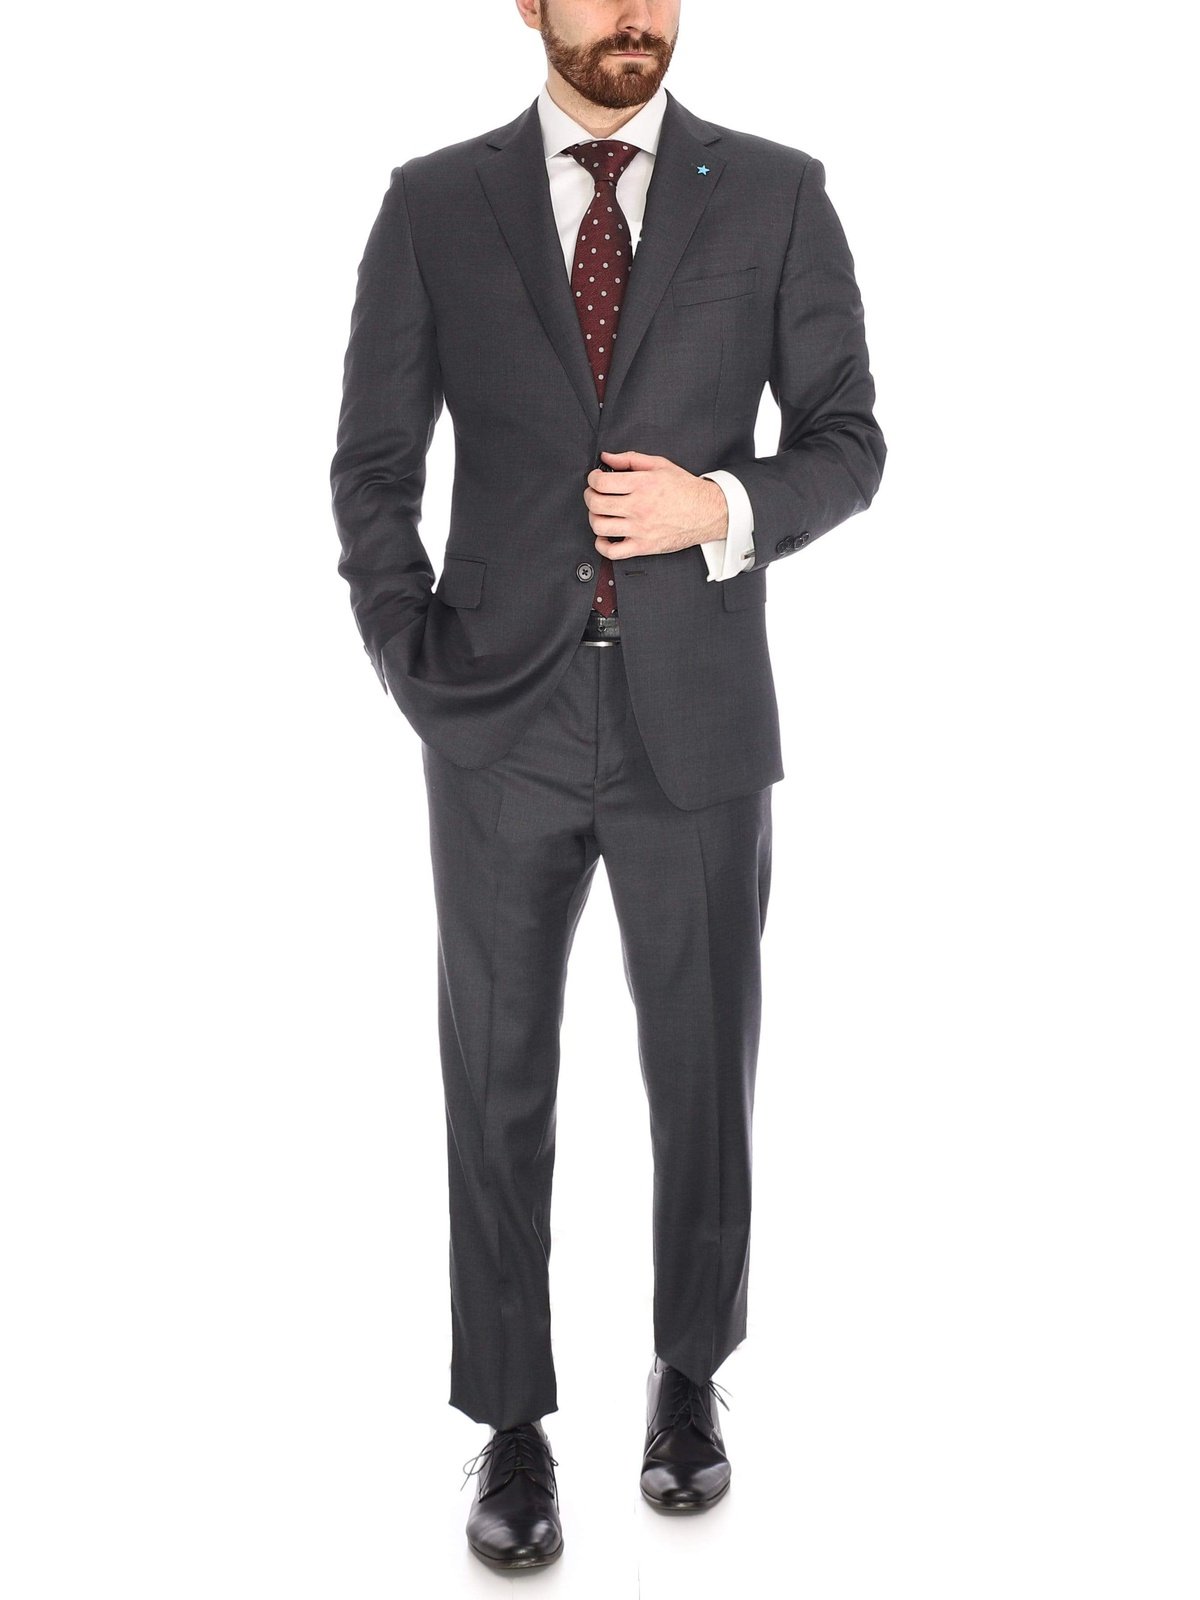 Luxury Suits | The Suit Depot